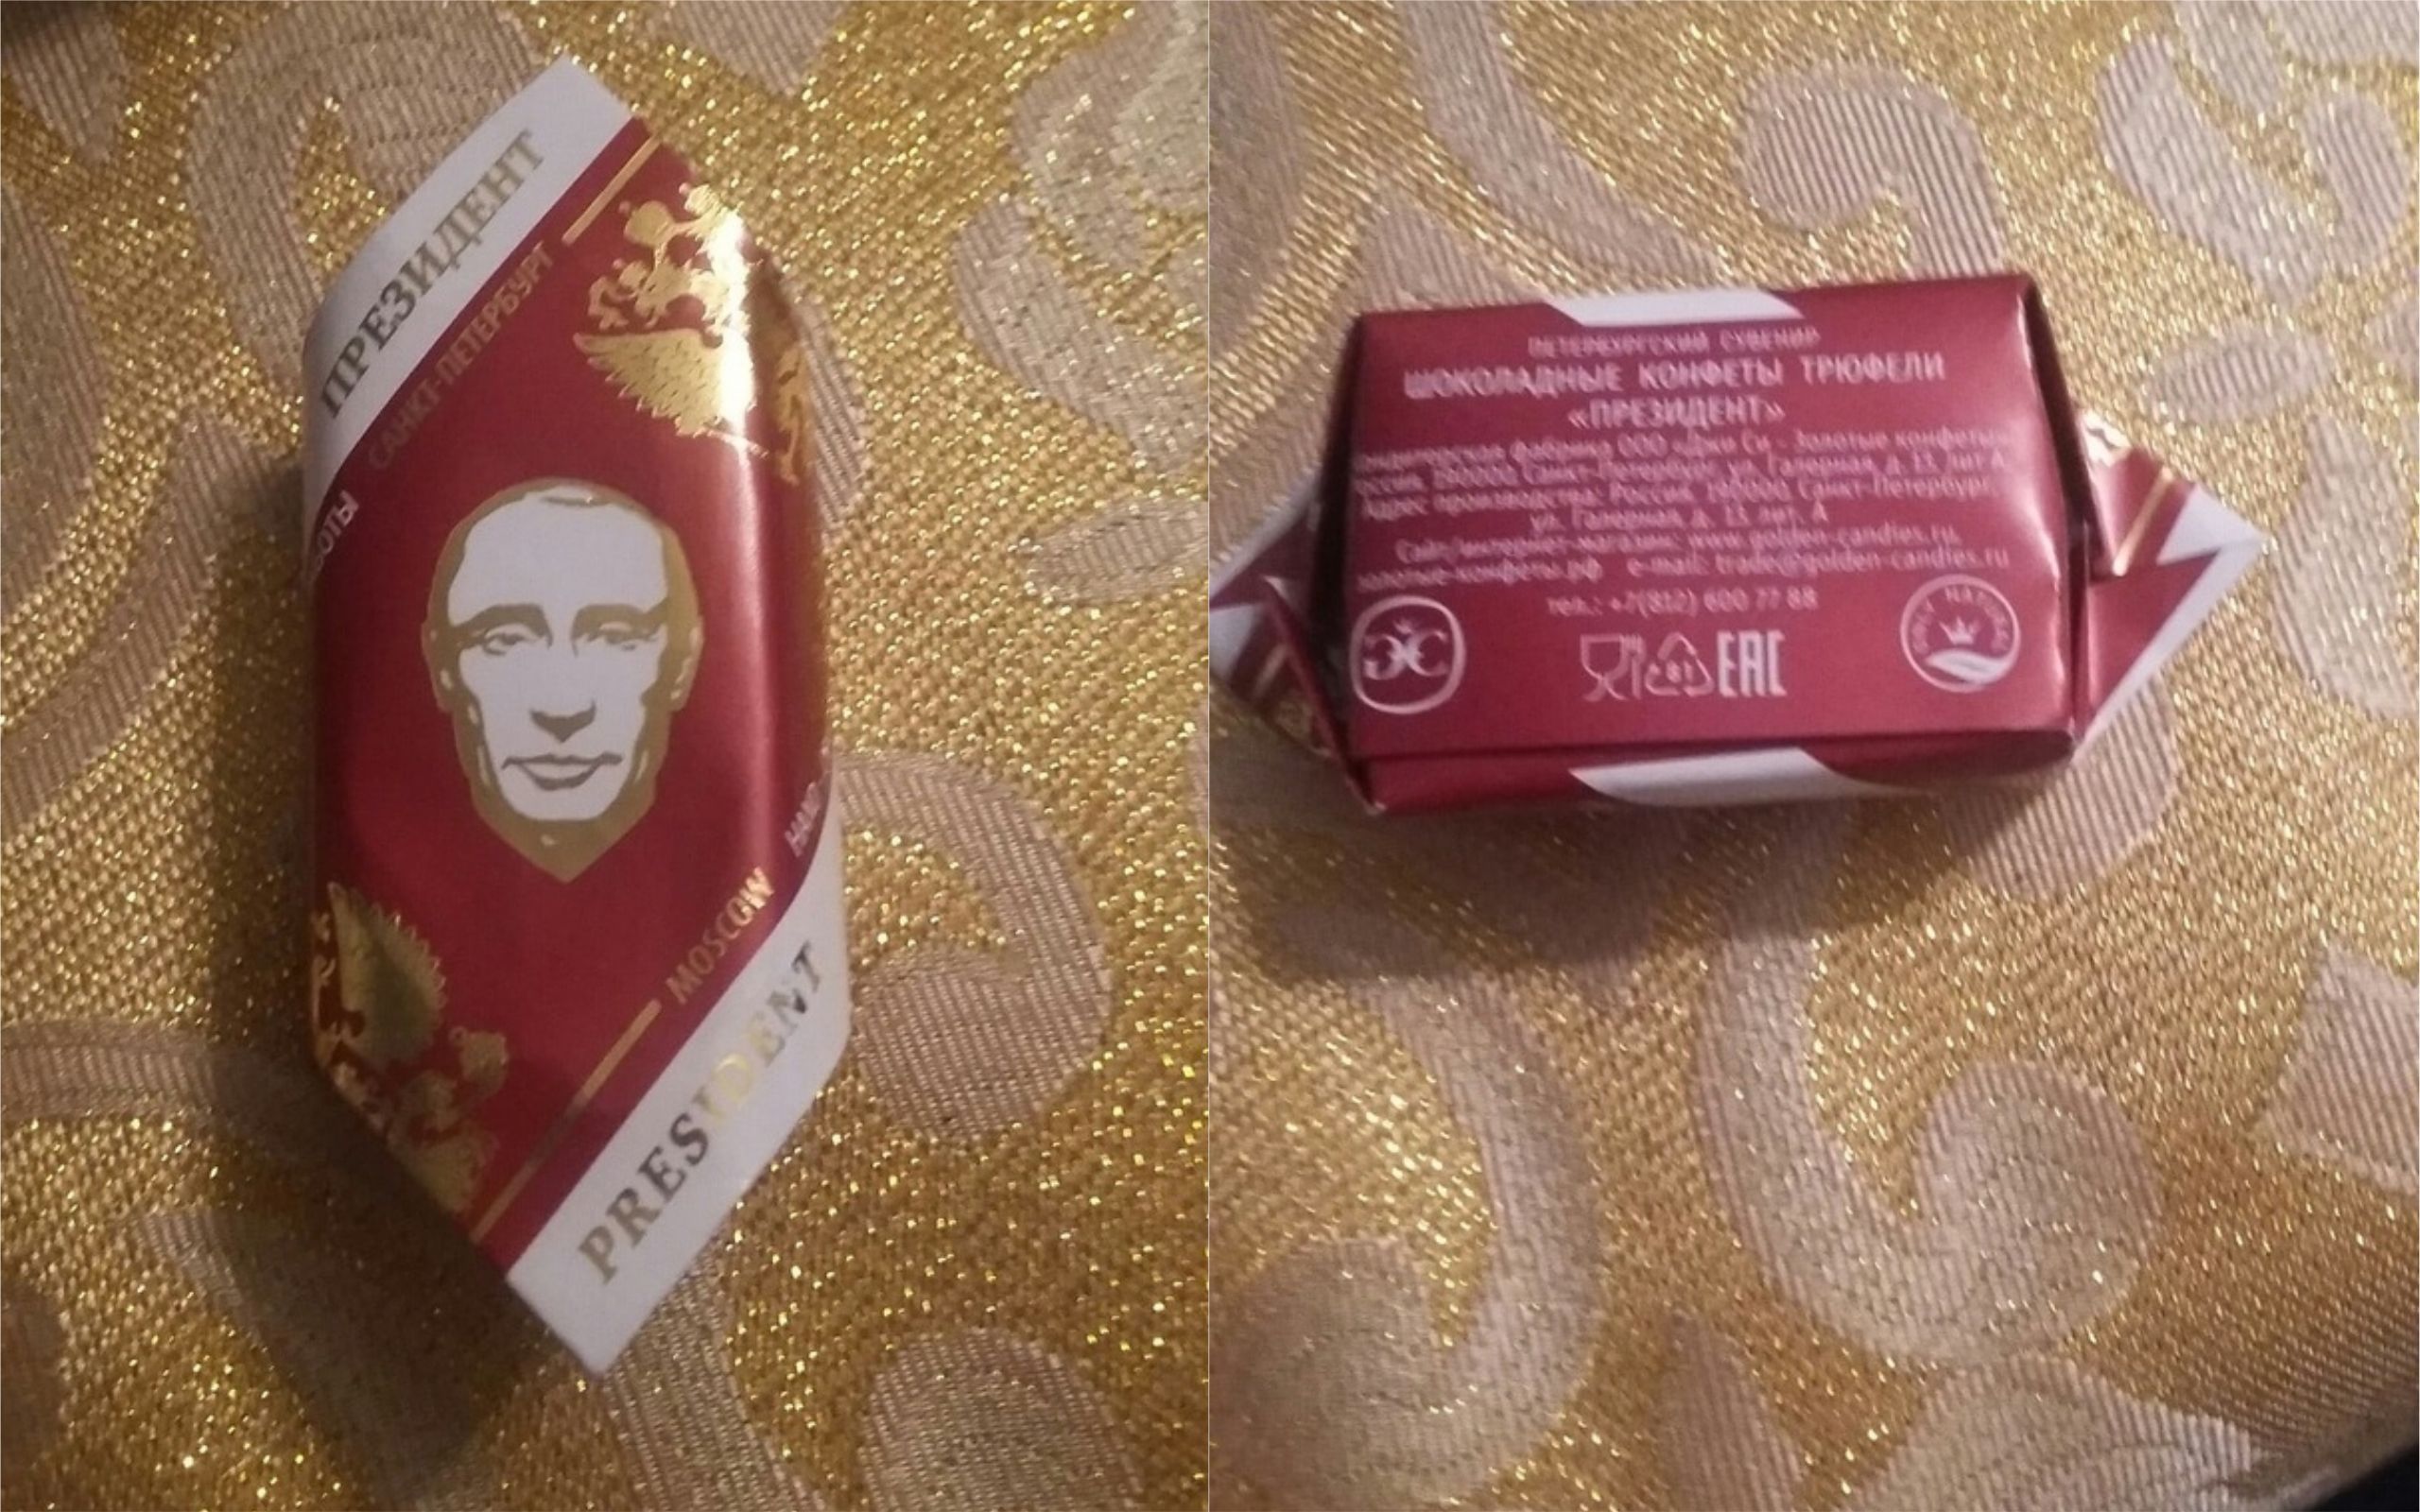 Приучают с детства: в России детям подарили конфеты с фото Путина и начинкой из водки